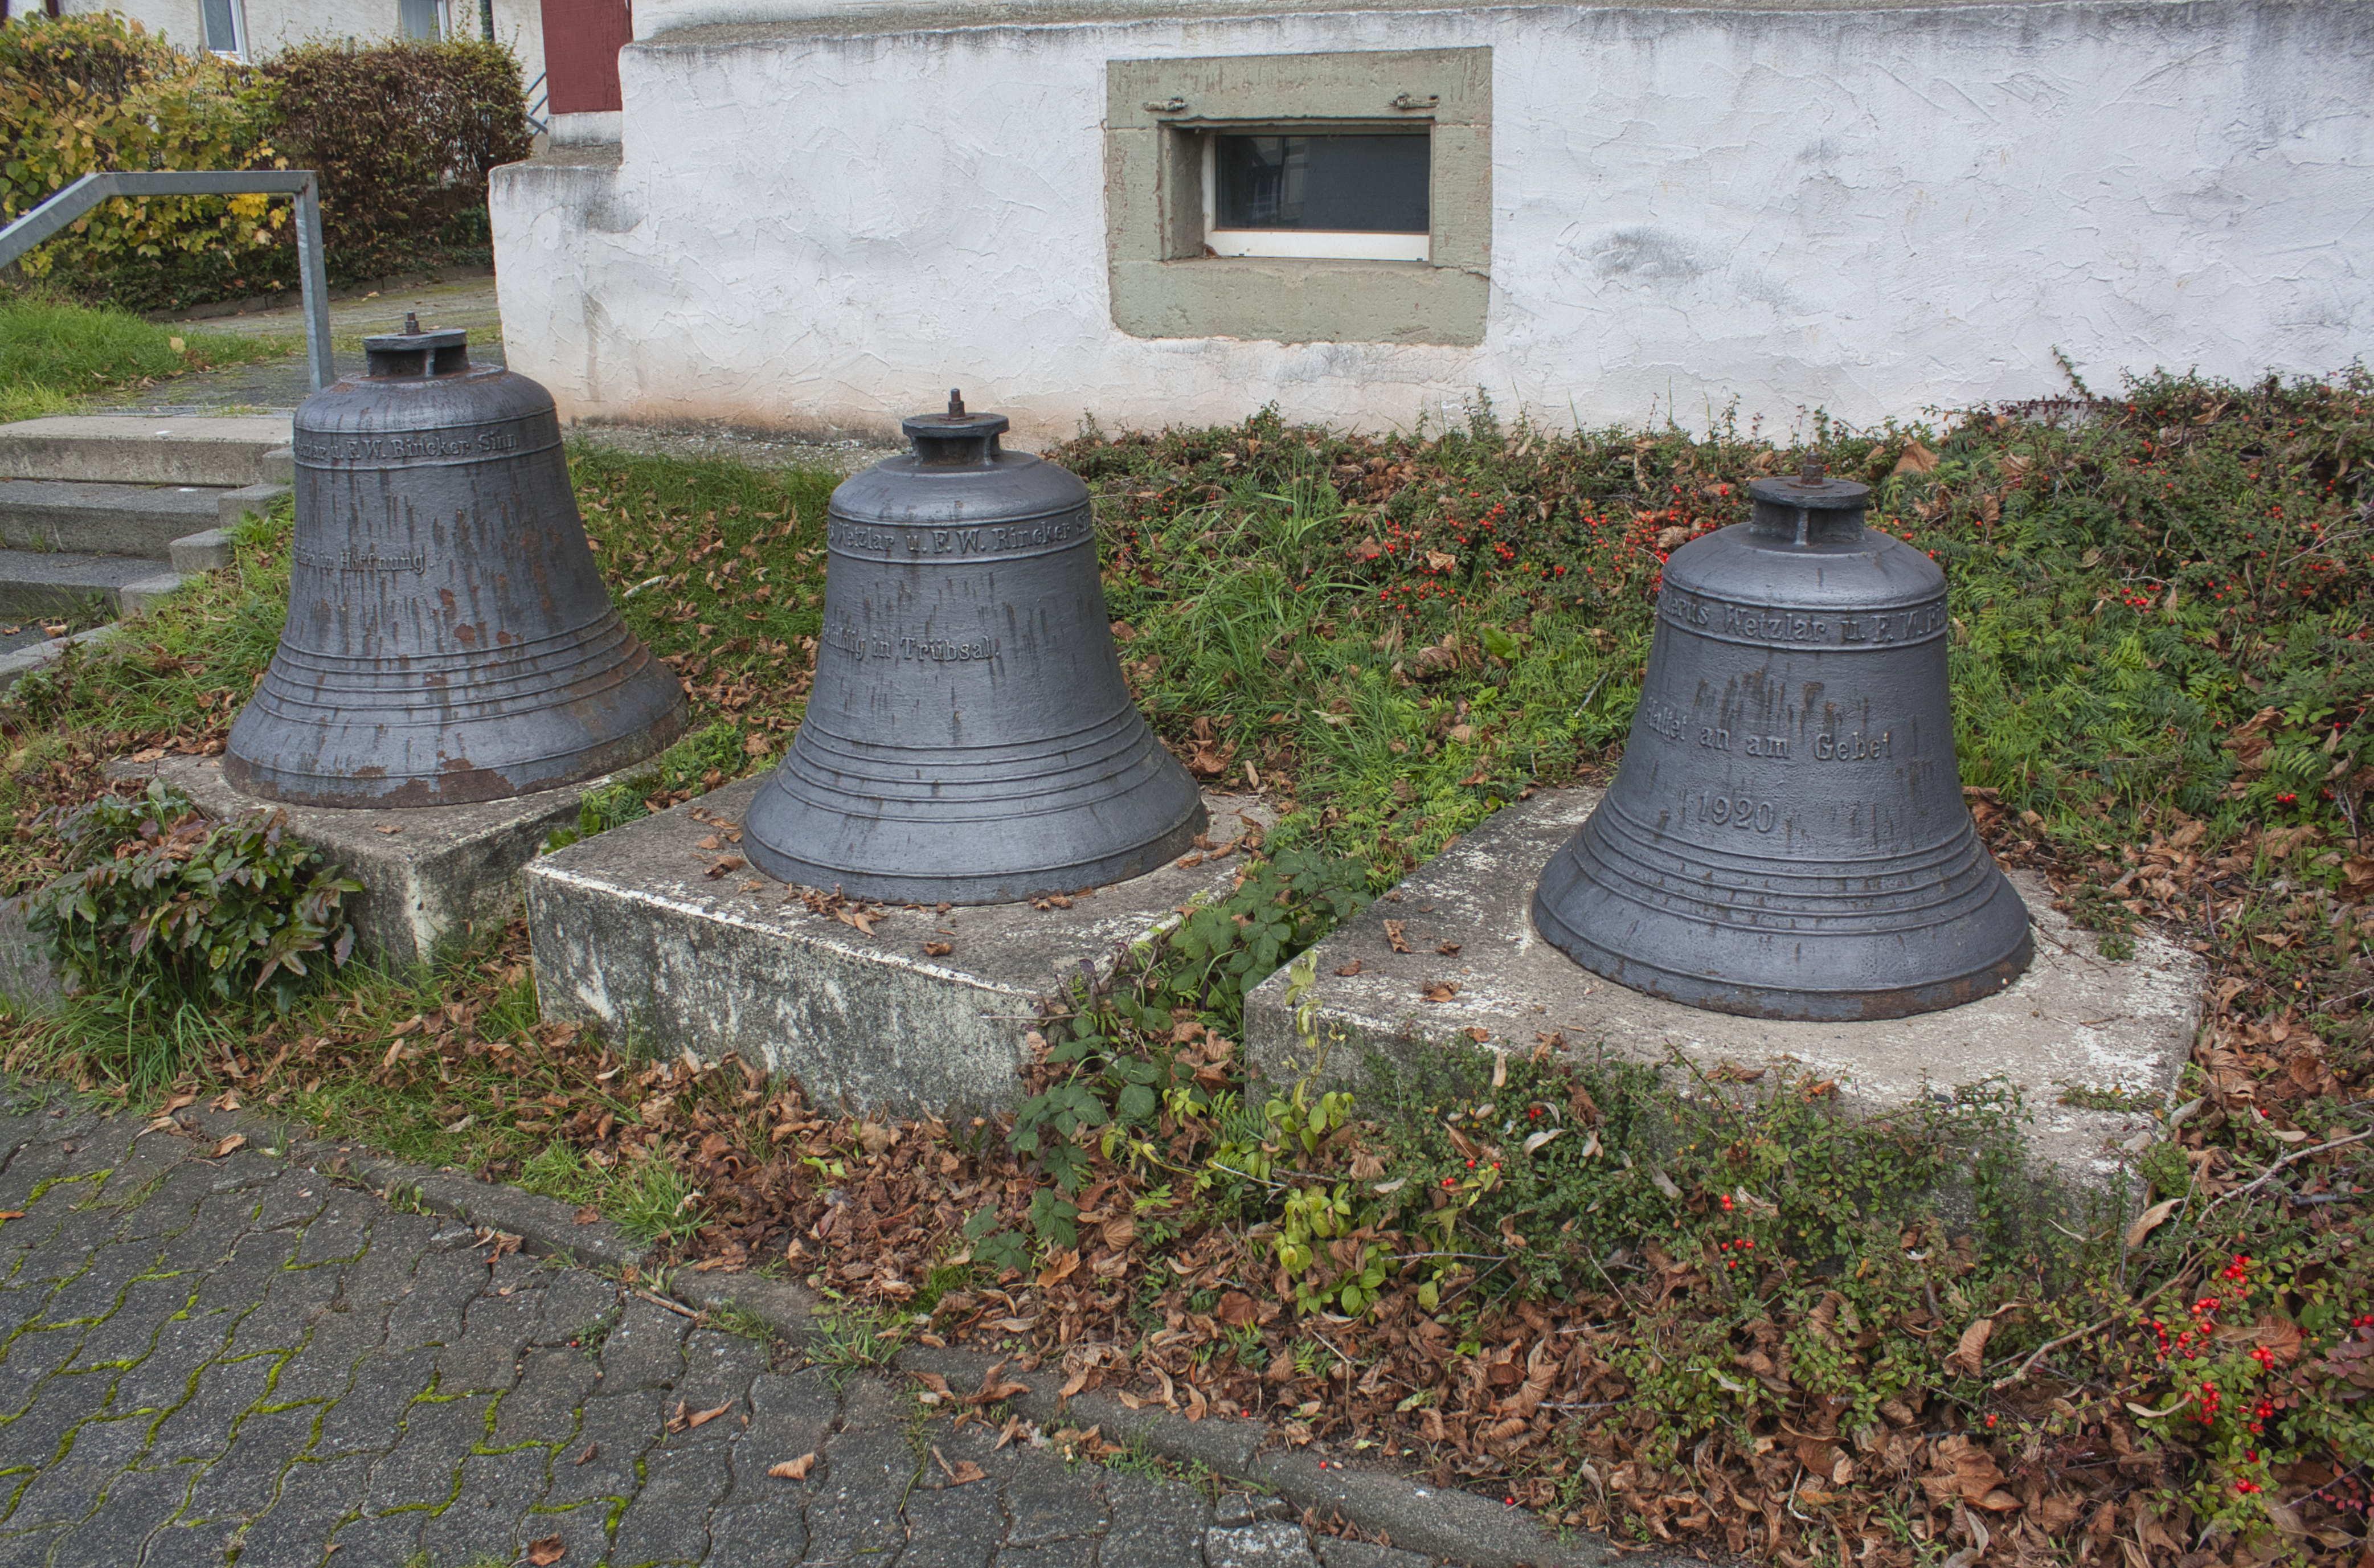 Glocken vor der evangelischen Kirche in Dautphetal Buchenau.
